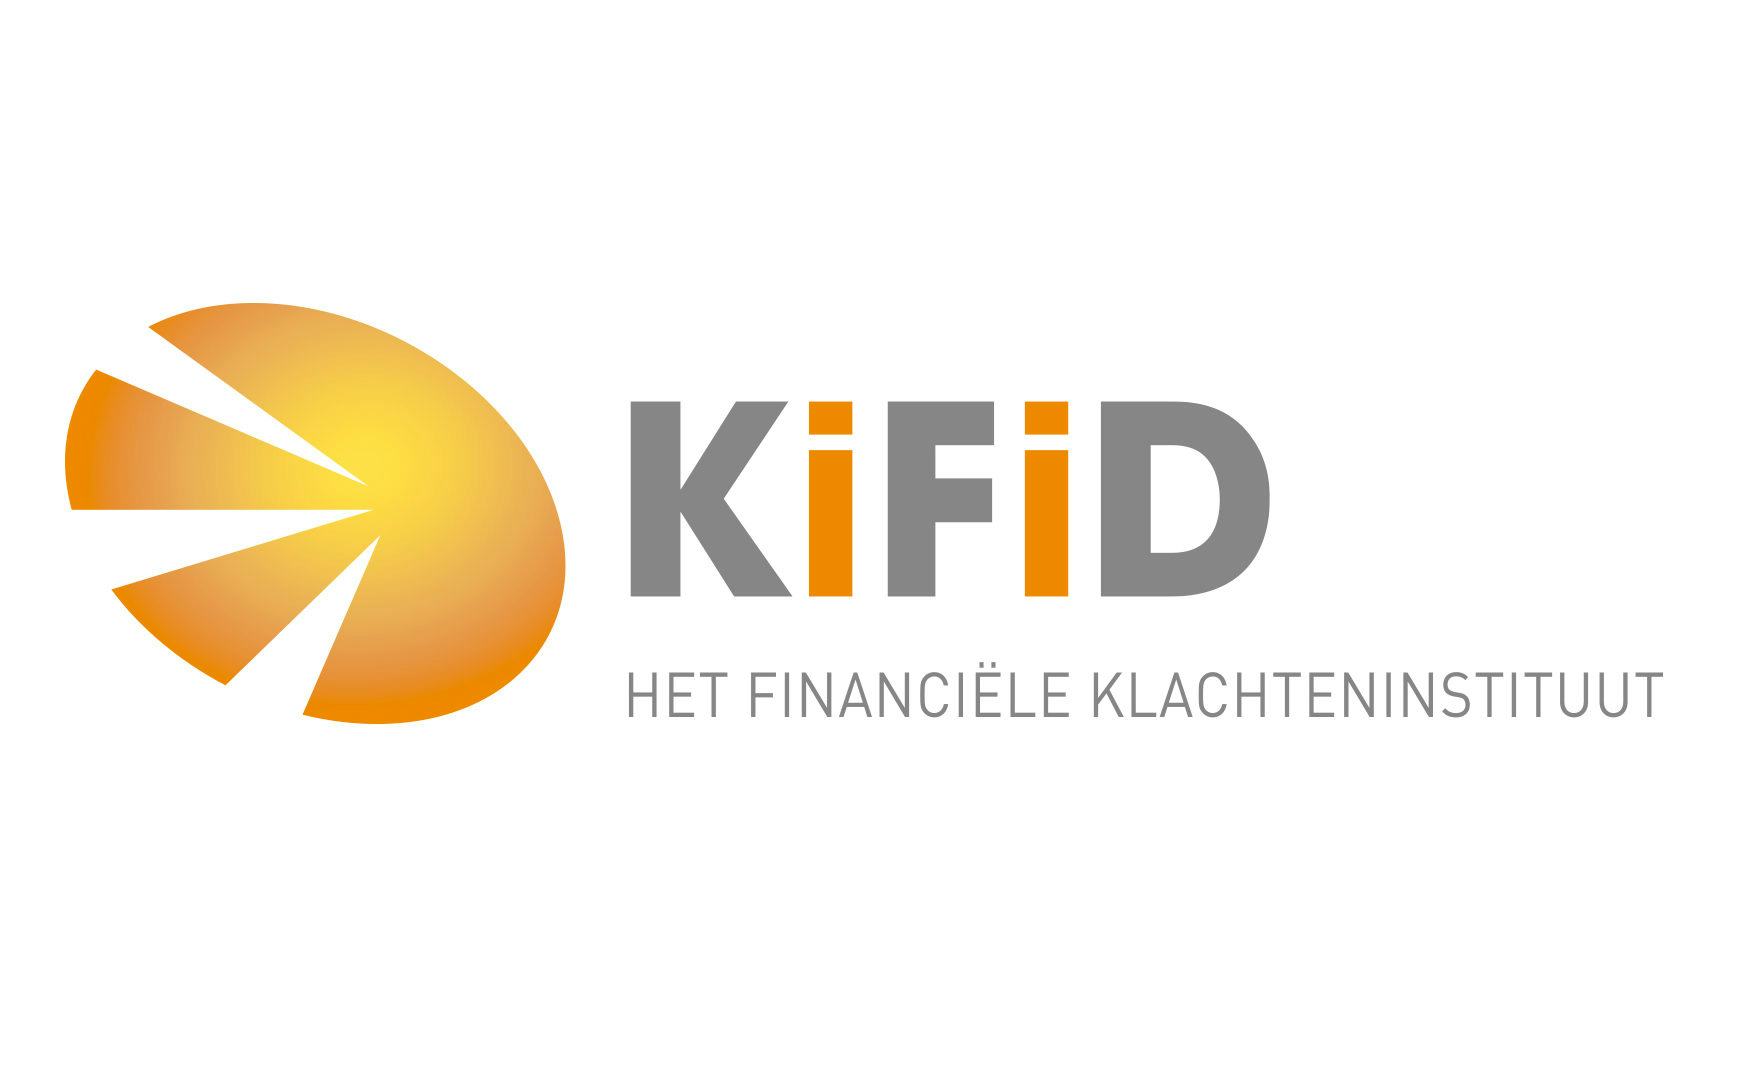 'Intermediair betaalt teveel voor KiFiD'